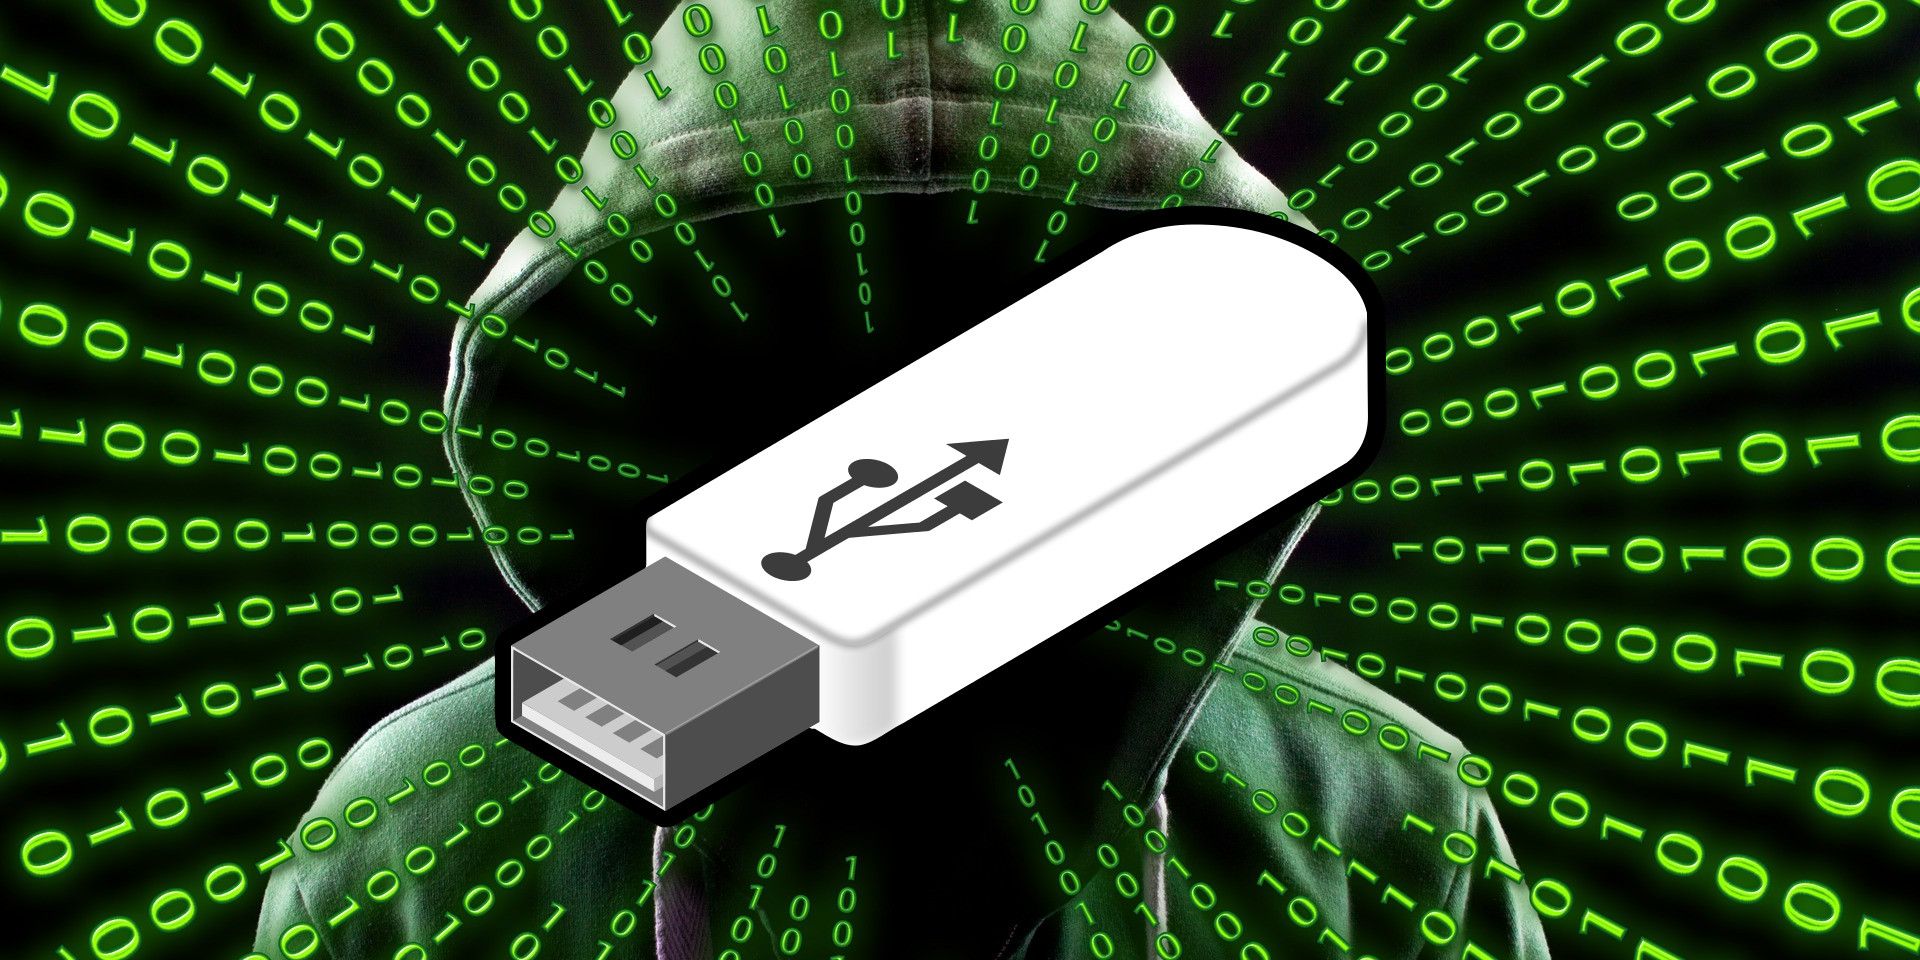 El FBI advierte que las unidades USB podrían tener ransomware: esto es lo que sabemos